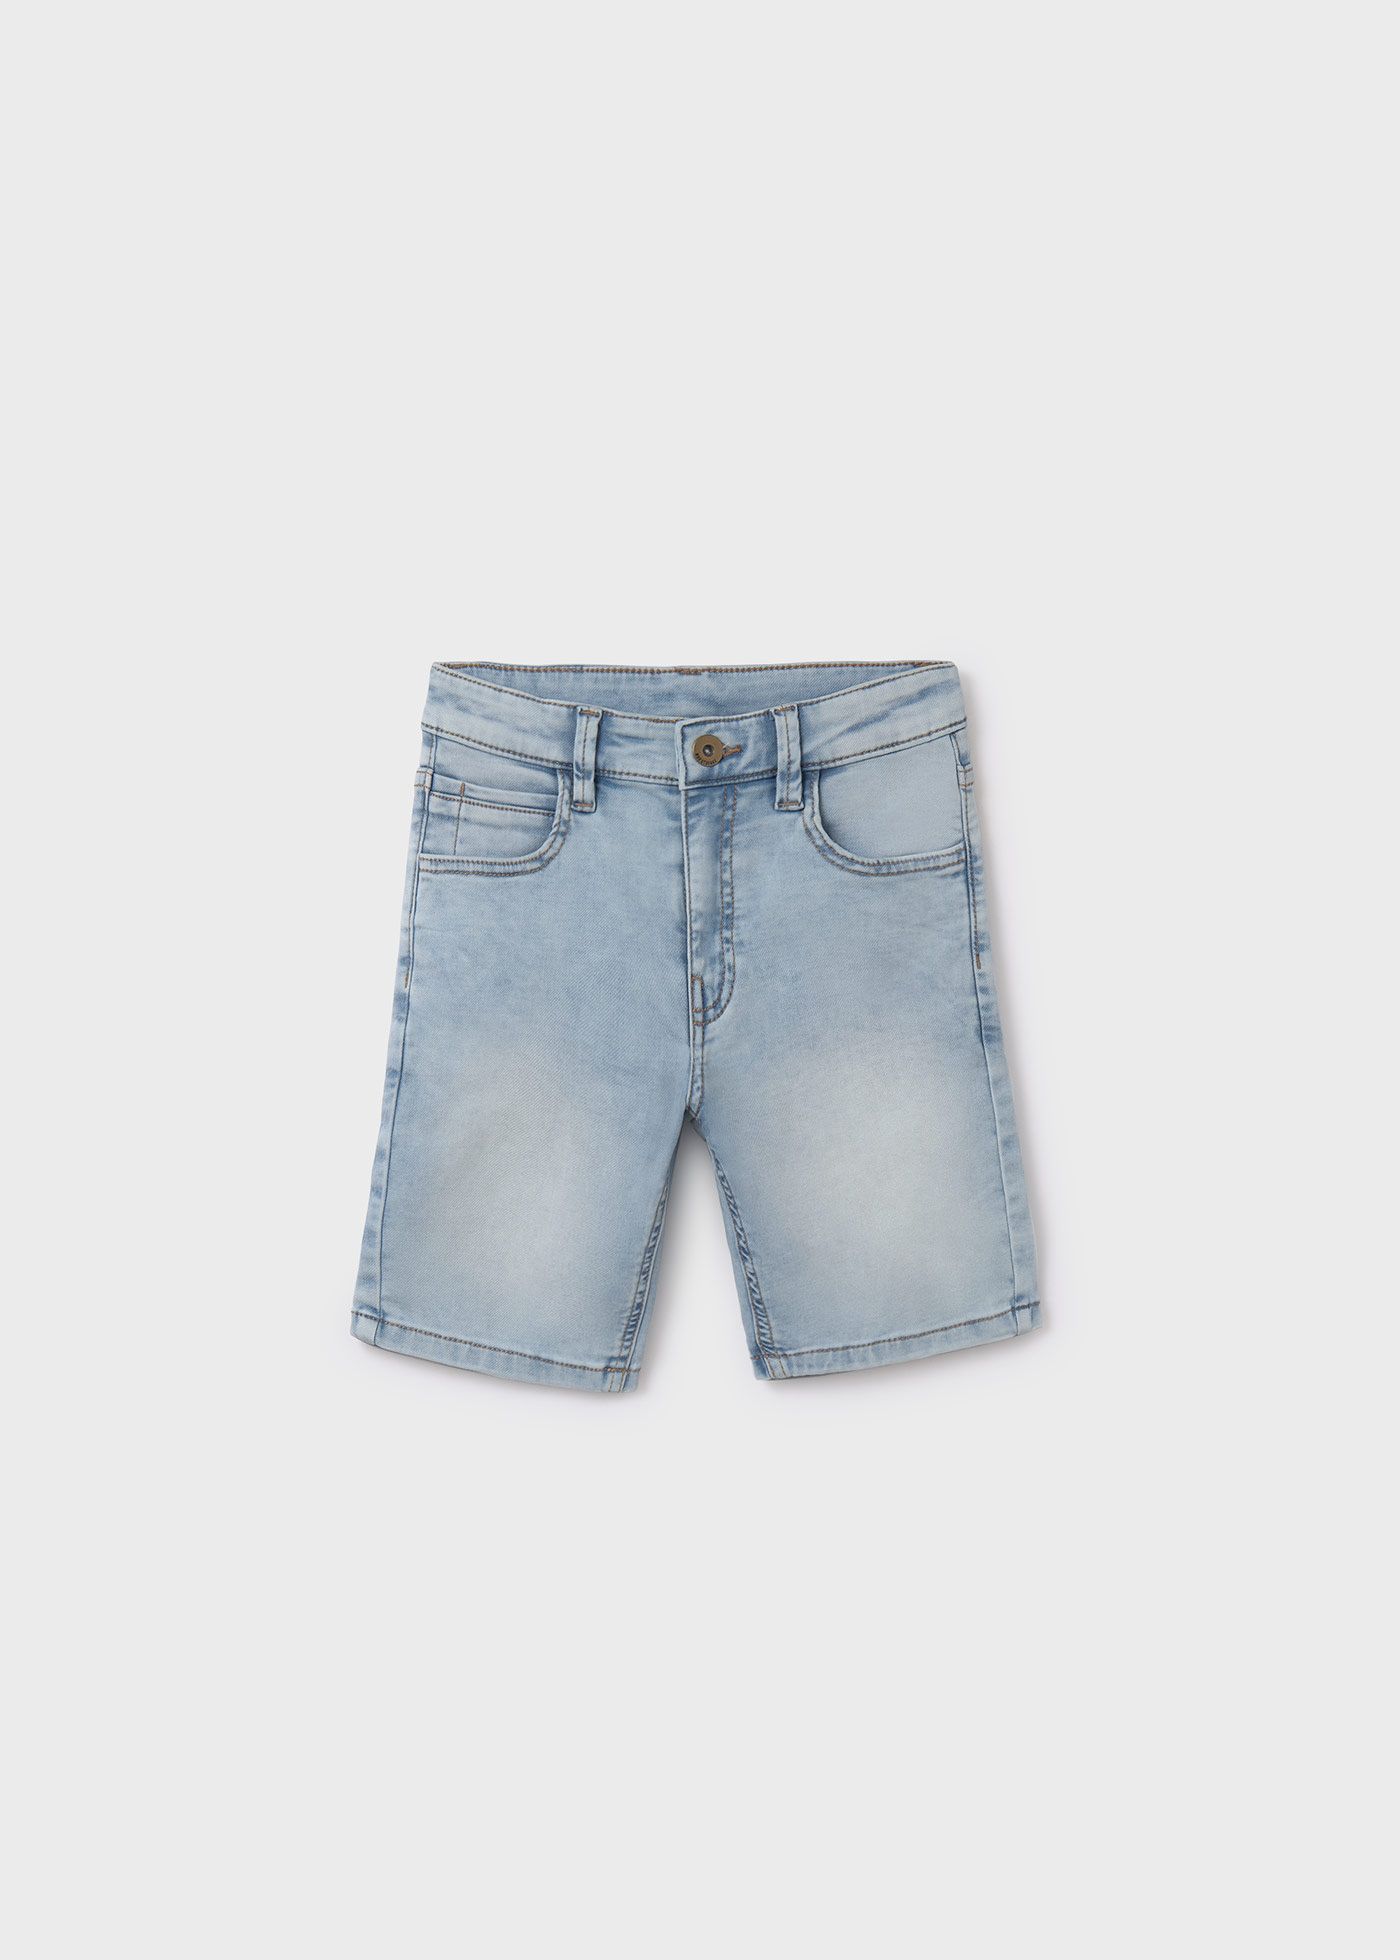 Jeans-Bermudas Better Cotton Teenager Jungen